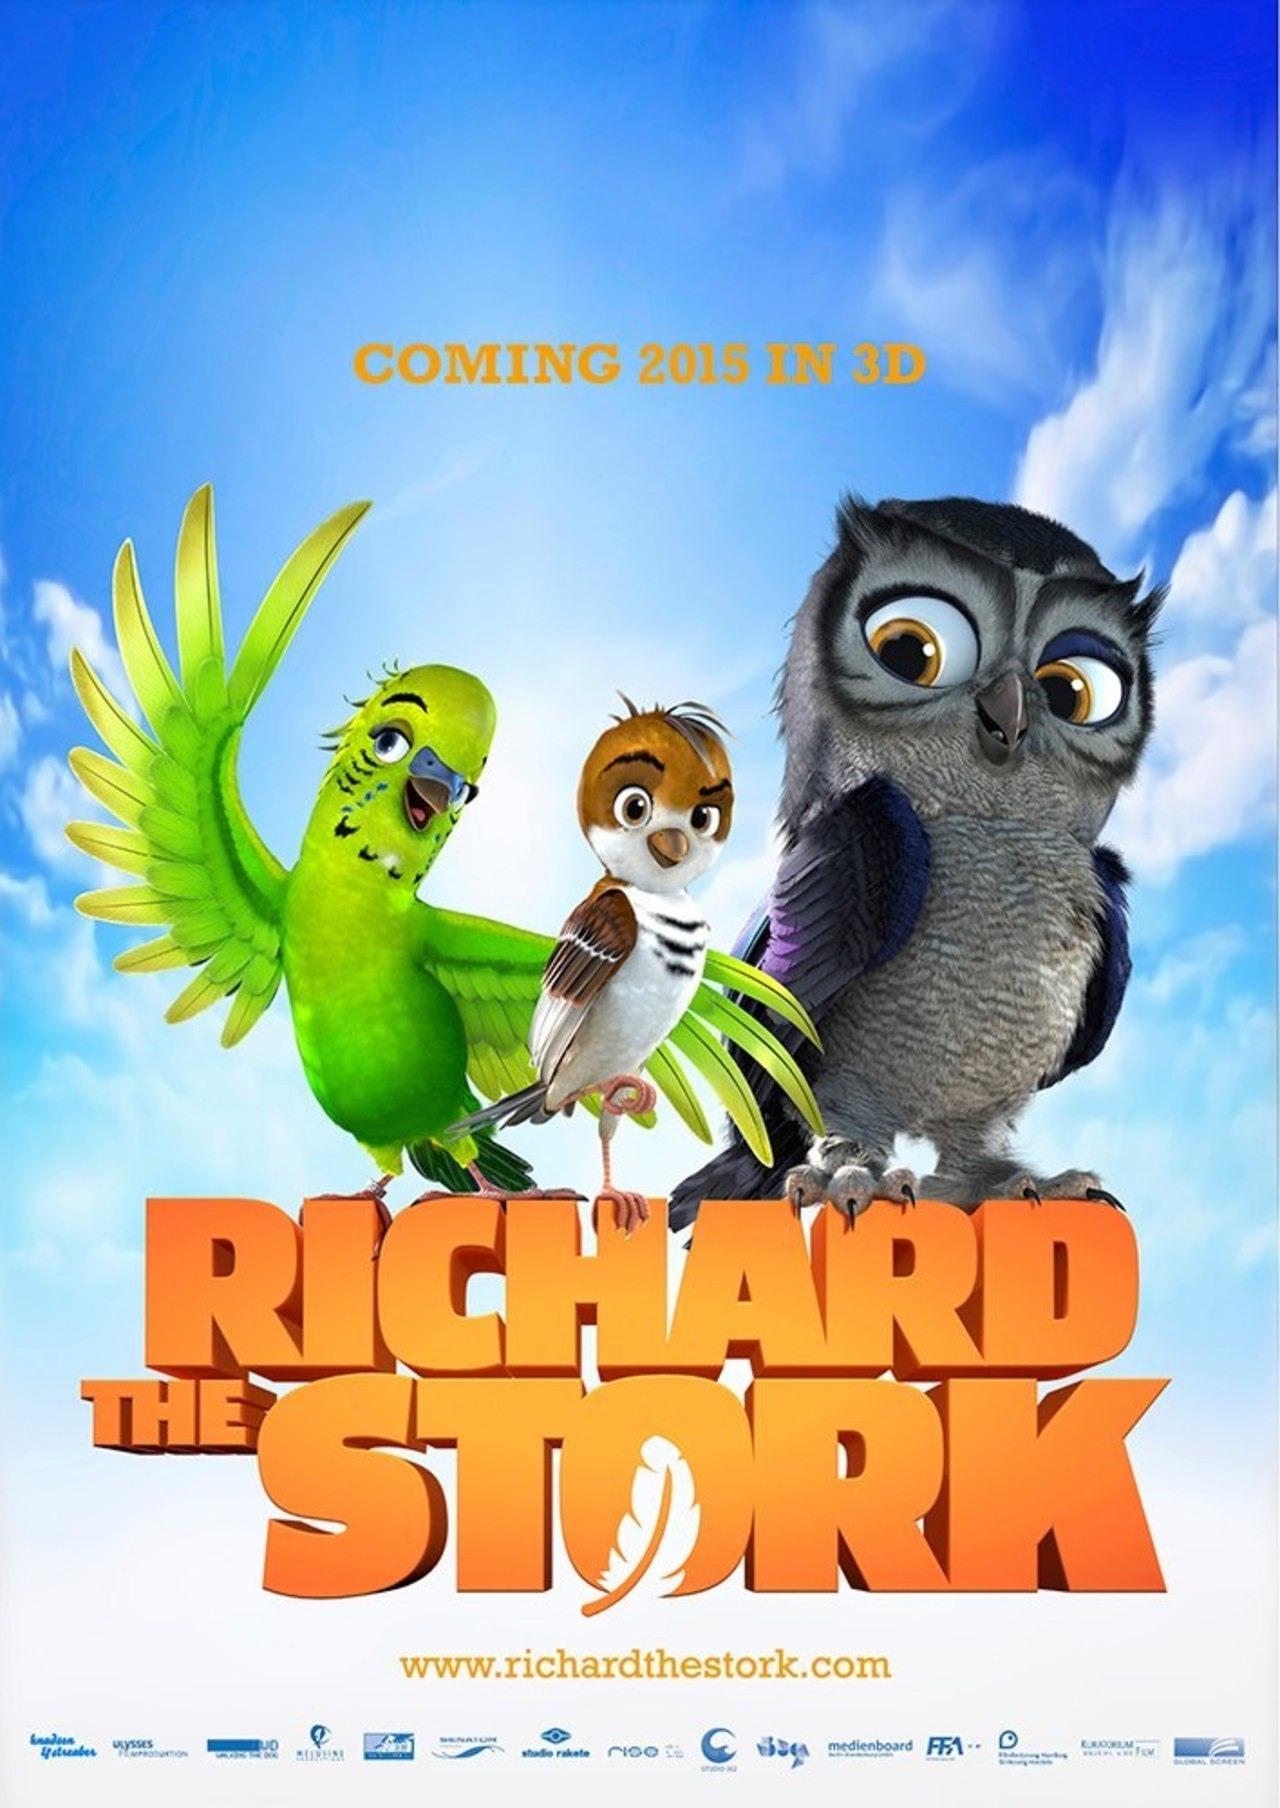 Постер фильма Трио в перьях | Richard the Stork